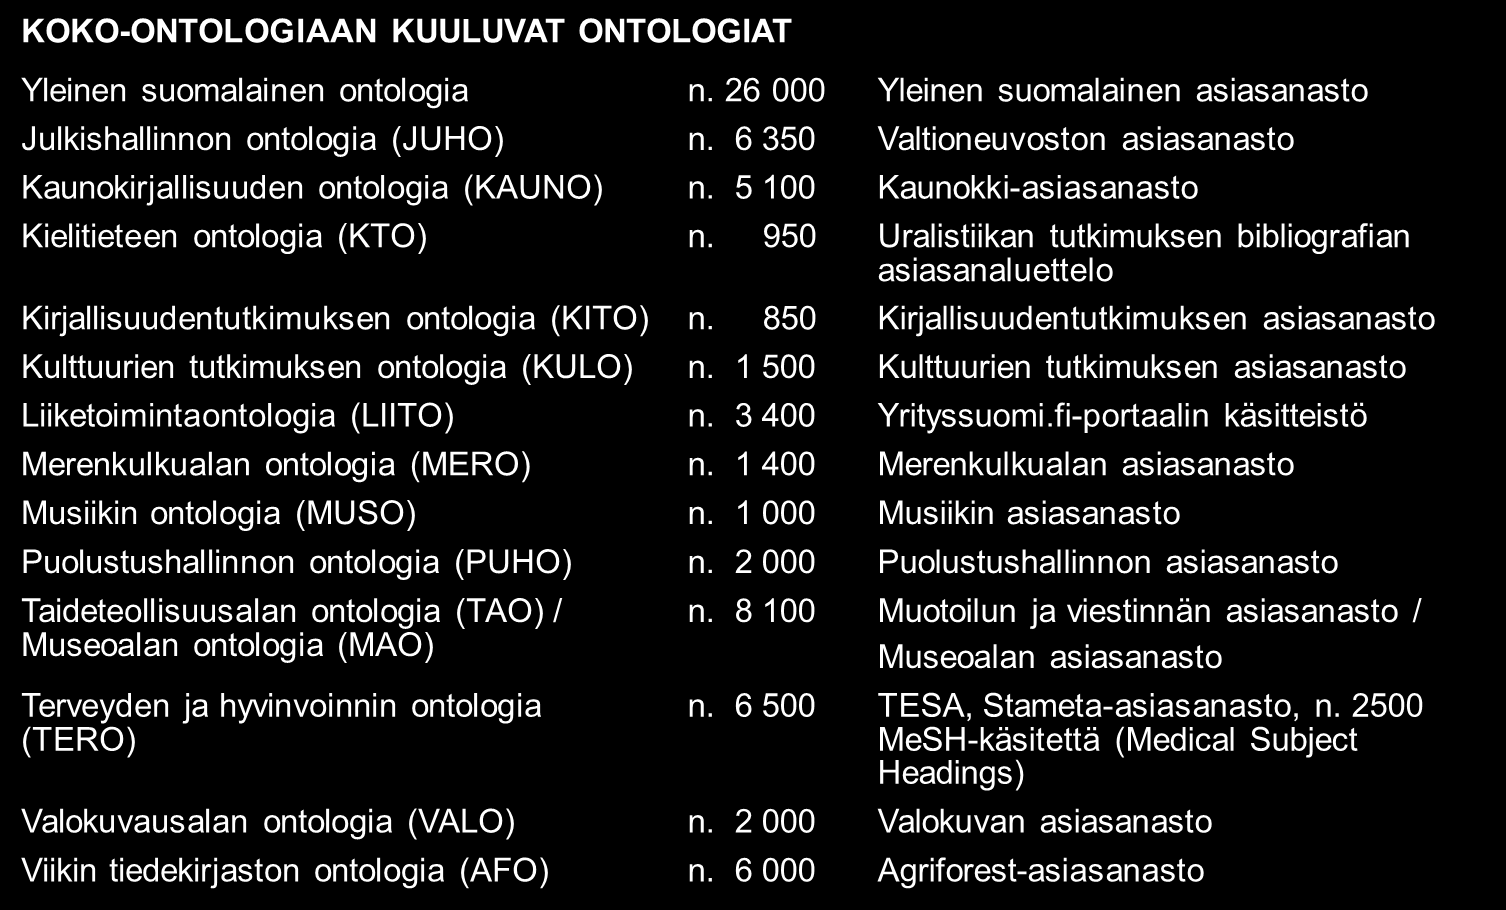 KOKO-ontologiapilveen kuului v. 2013 lopulla taulukossa 2.1 luetellut 15 ontologiaa, yhteensä yli 71 000 käsitettä, ja uusia ontologioita ollaan ottamassa mukaan. Taulukko 2.1. Suomalaisista asiasanastoista tuotettuja FinnONTO-ontologioita, yhteensä n.